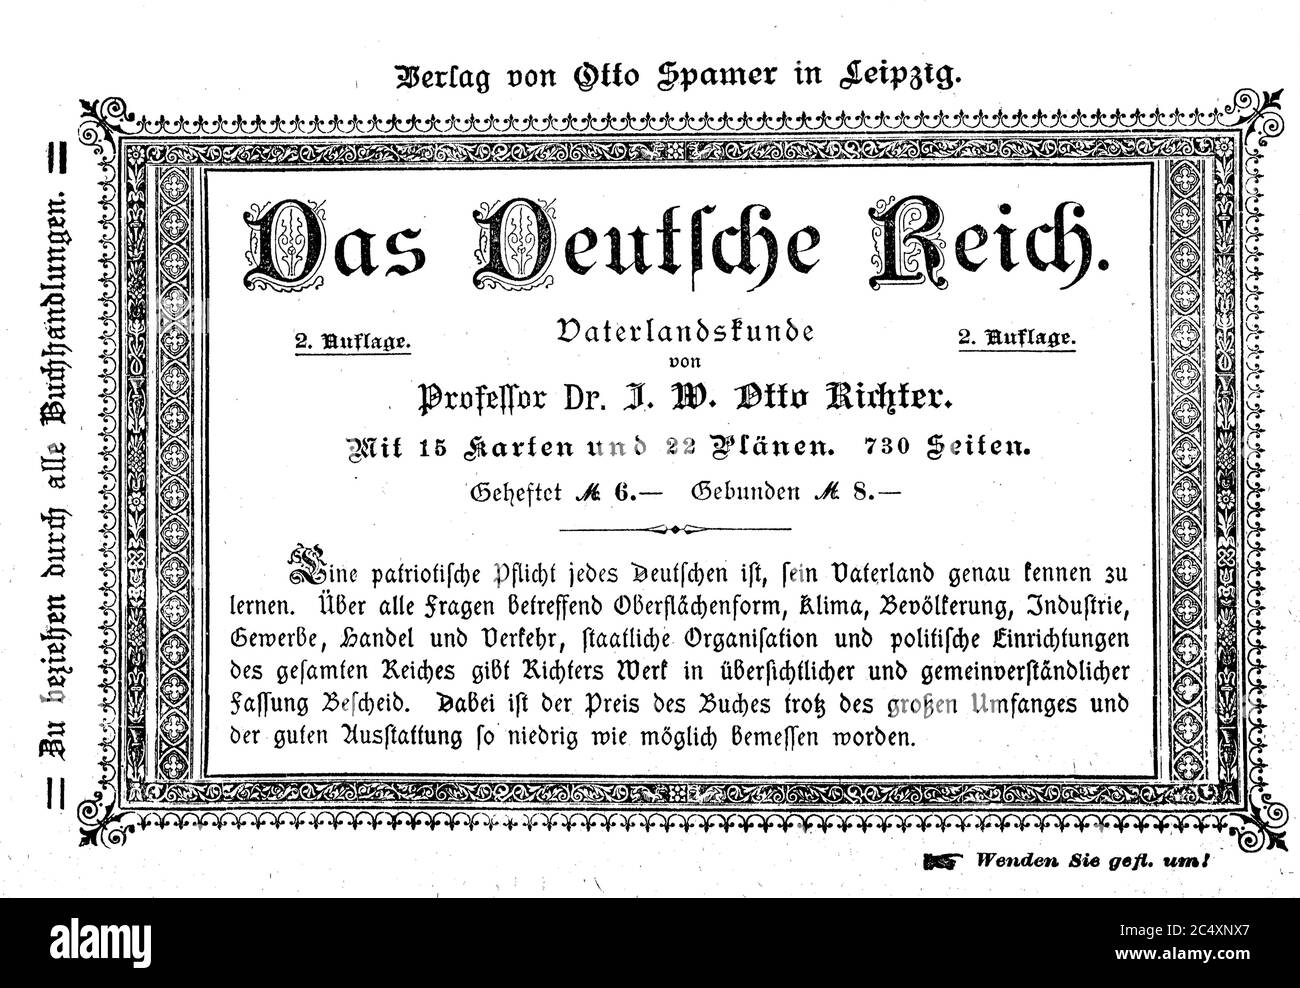 Publicidad, publicación de anuncios Spamer para el libro The German Empire, CA 1890 / Werbung, Werbeanzeige des Verlag Spamer fuer das Buch Das Deutsche Reich, CA 1890 Foto de stock